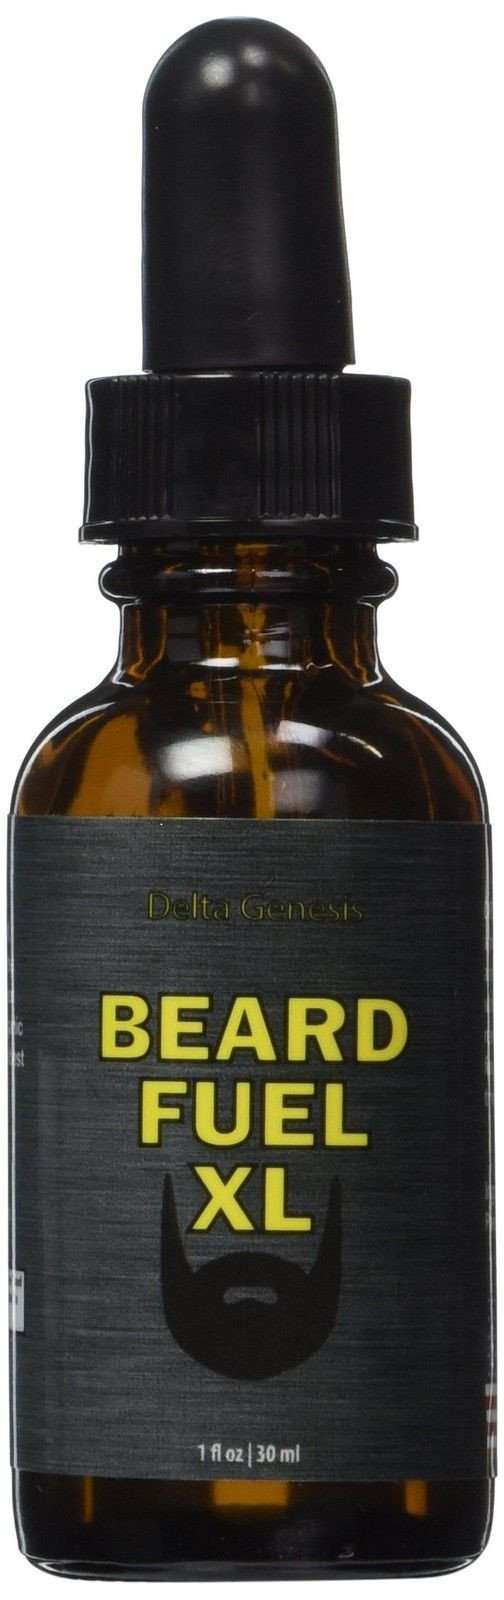 Beard Fuel Xl | Top Facial Hair Solution For Maximum Beard Volume | Invigorat.. - $60.95